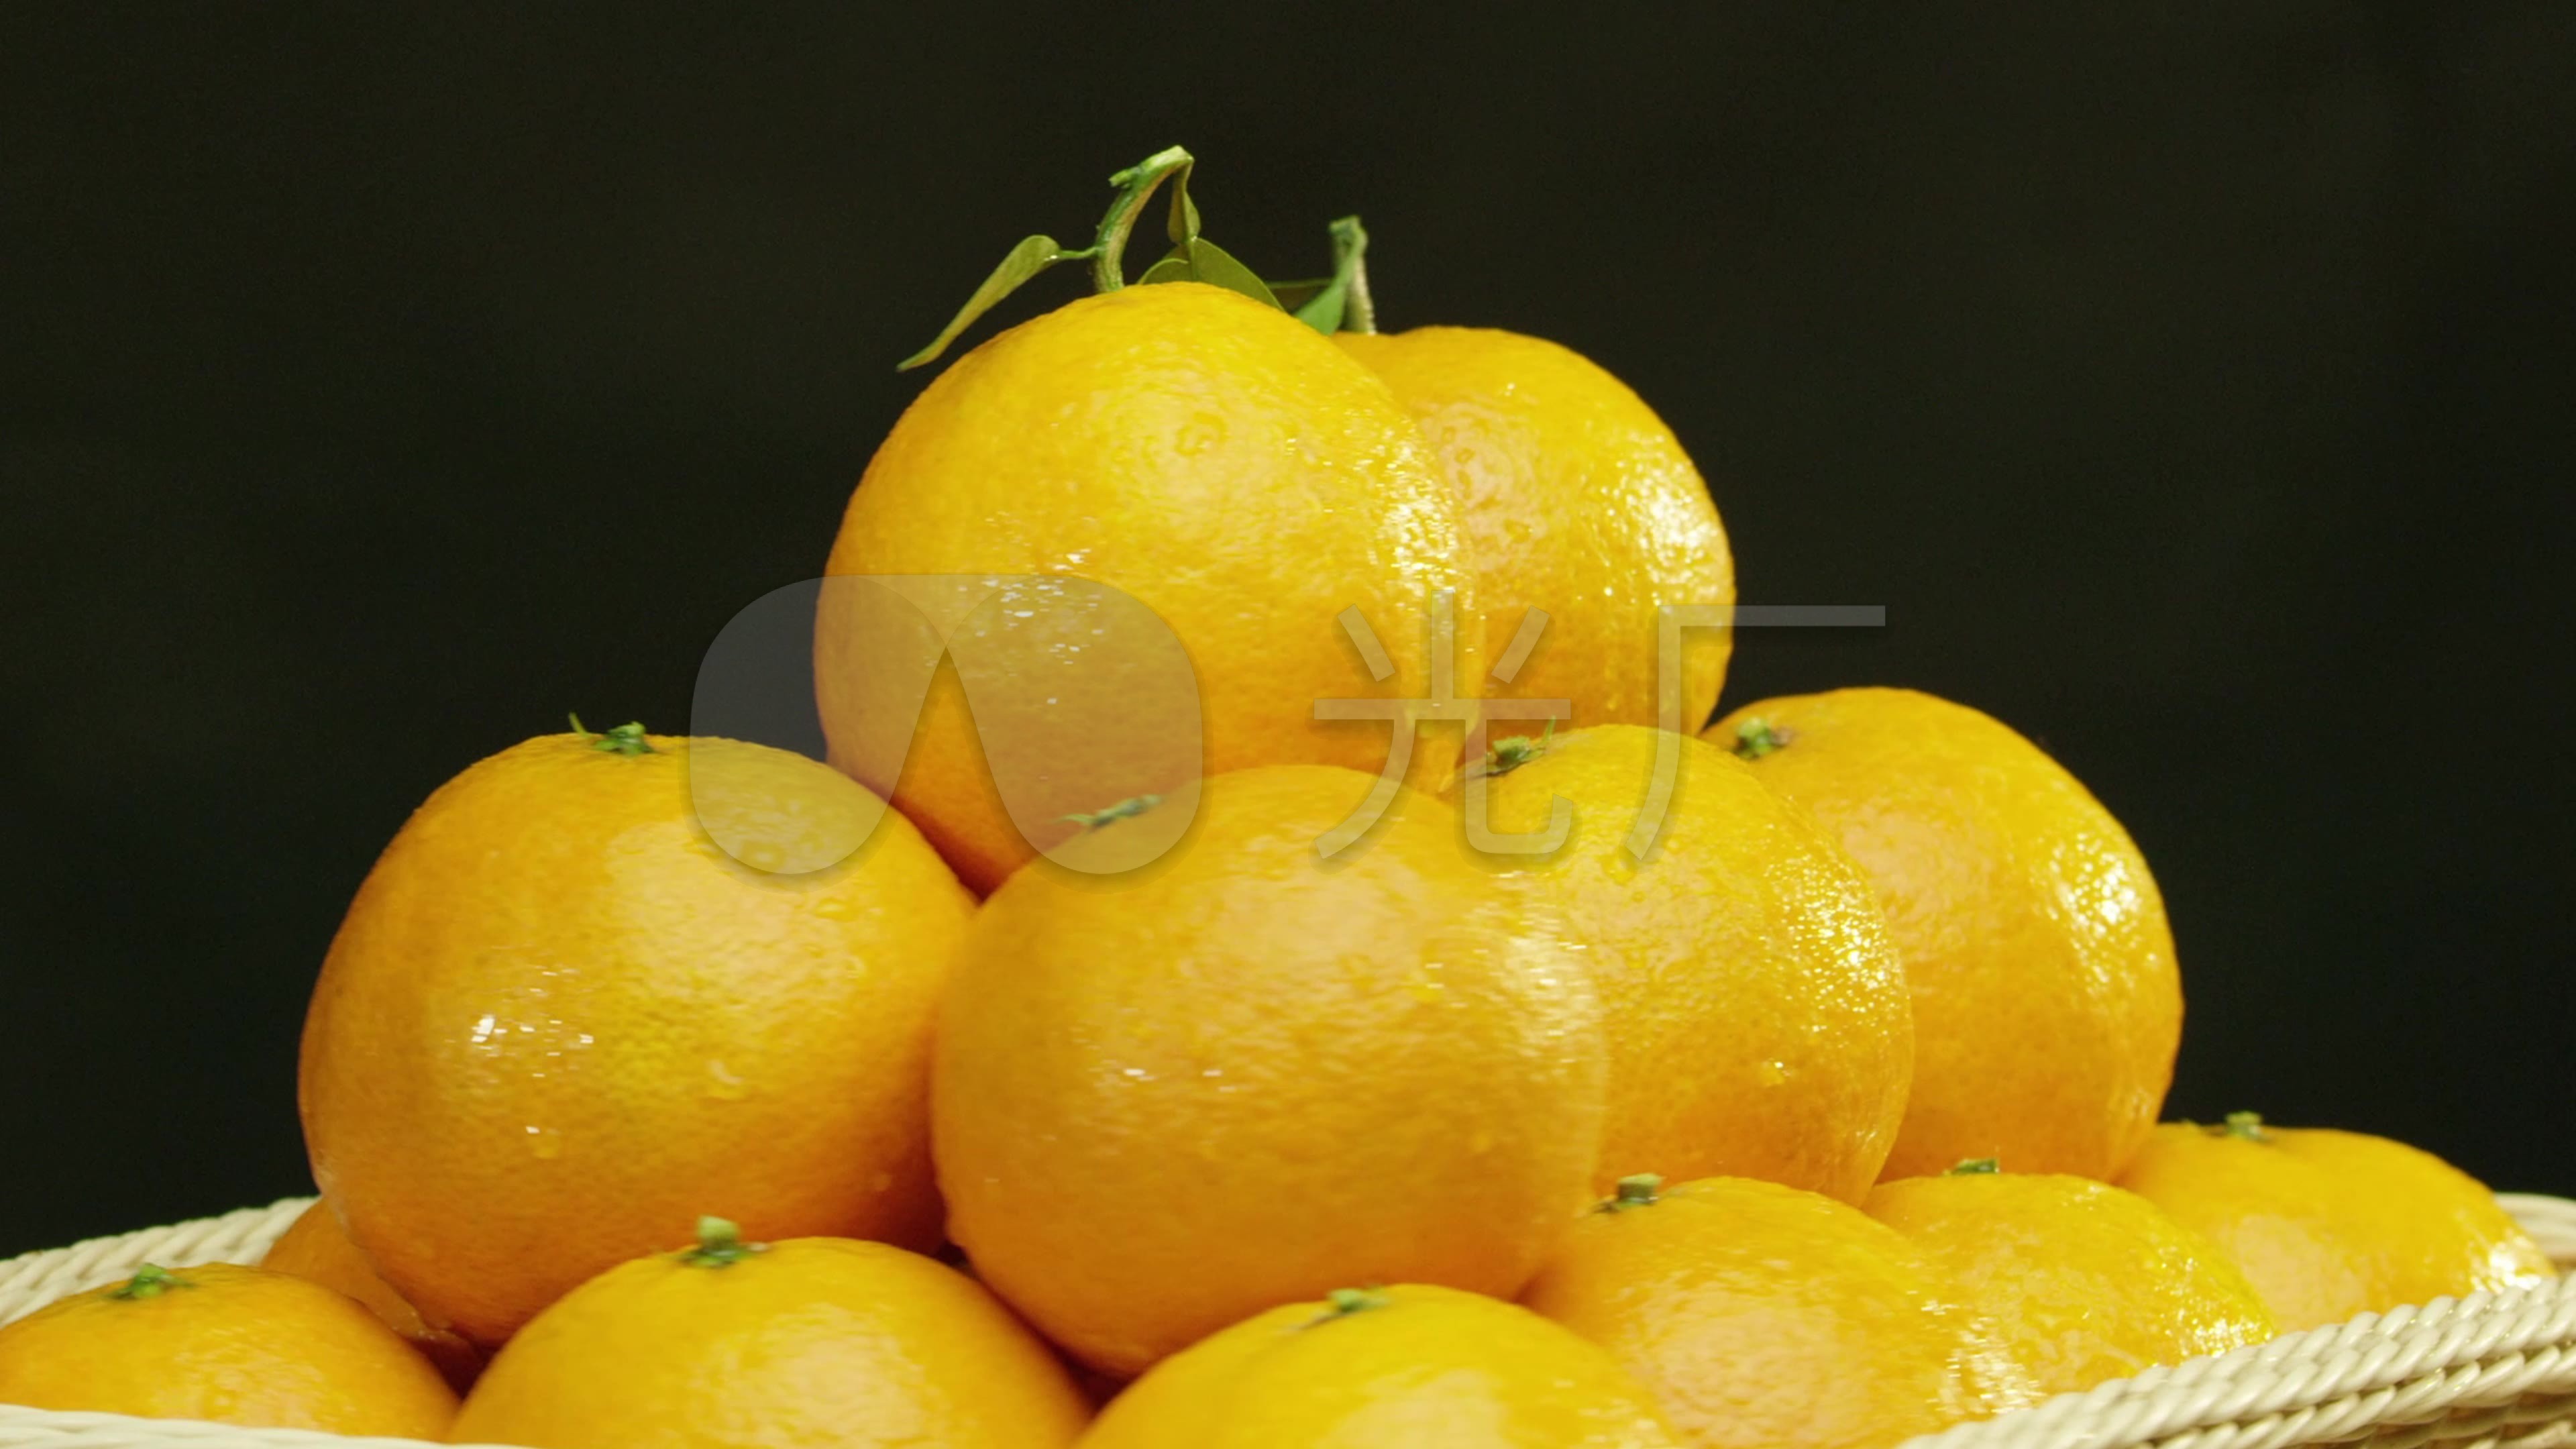 白底绿叶几个小橘子剥开橘子桔子蜜桔图片免费下载 - 觅知网